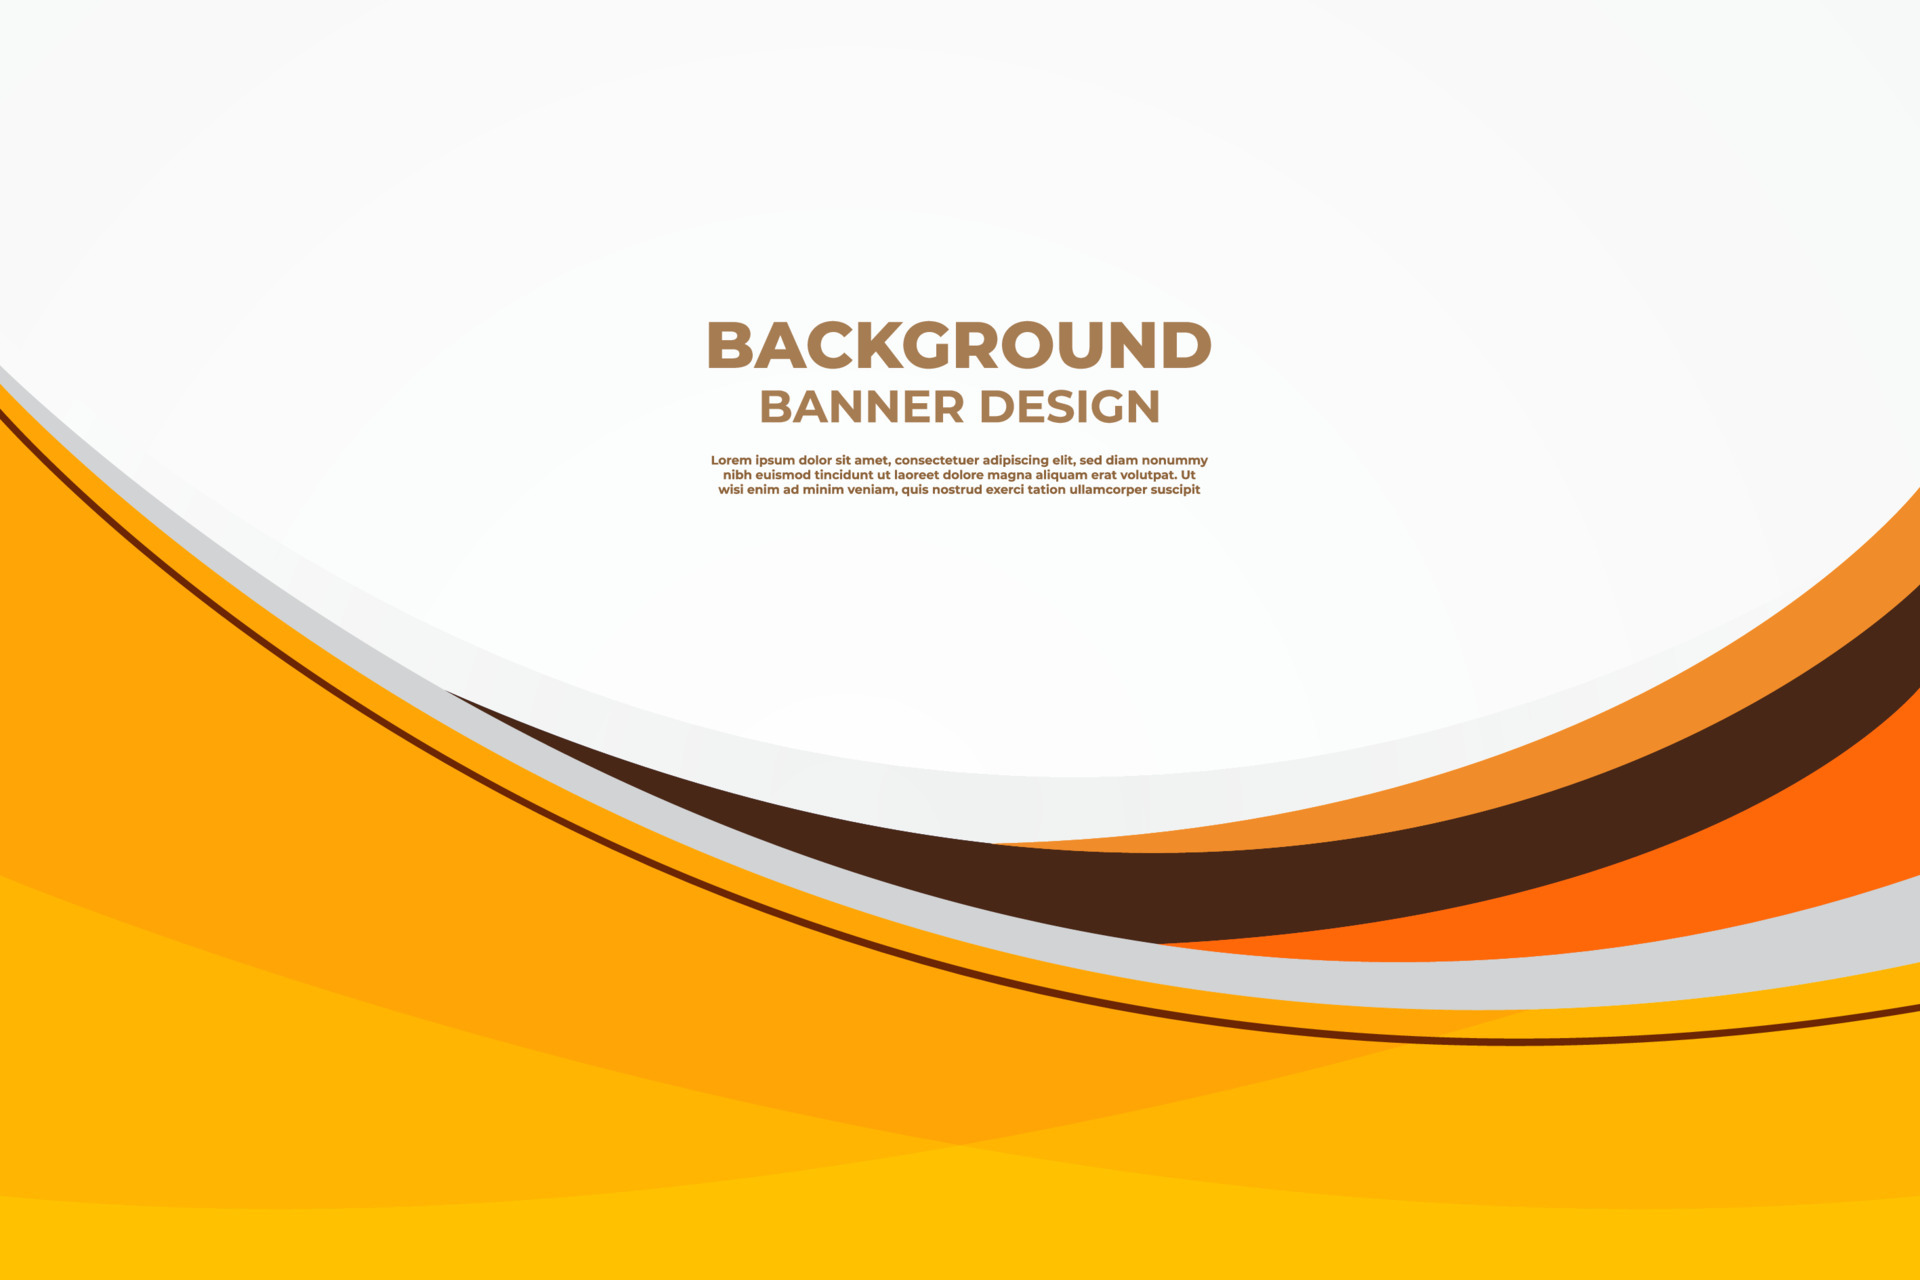 Bạn đang tìm kiếm mẫu thiết kế banner gradient màu cam thanh lịch đúng không? Với điểm nhấn sắc nét và hiện đại, banner này sẽ giúp sản phẩm, dịch vụ của bạn nổi bật hơn bao giờ hết. Hãy click vào hình ảnh để khám phá thêm về mẫu thiết kế này.